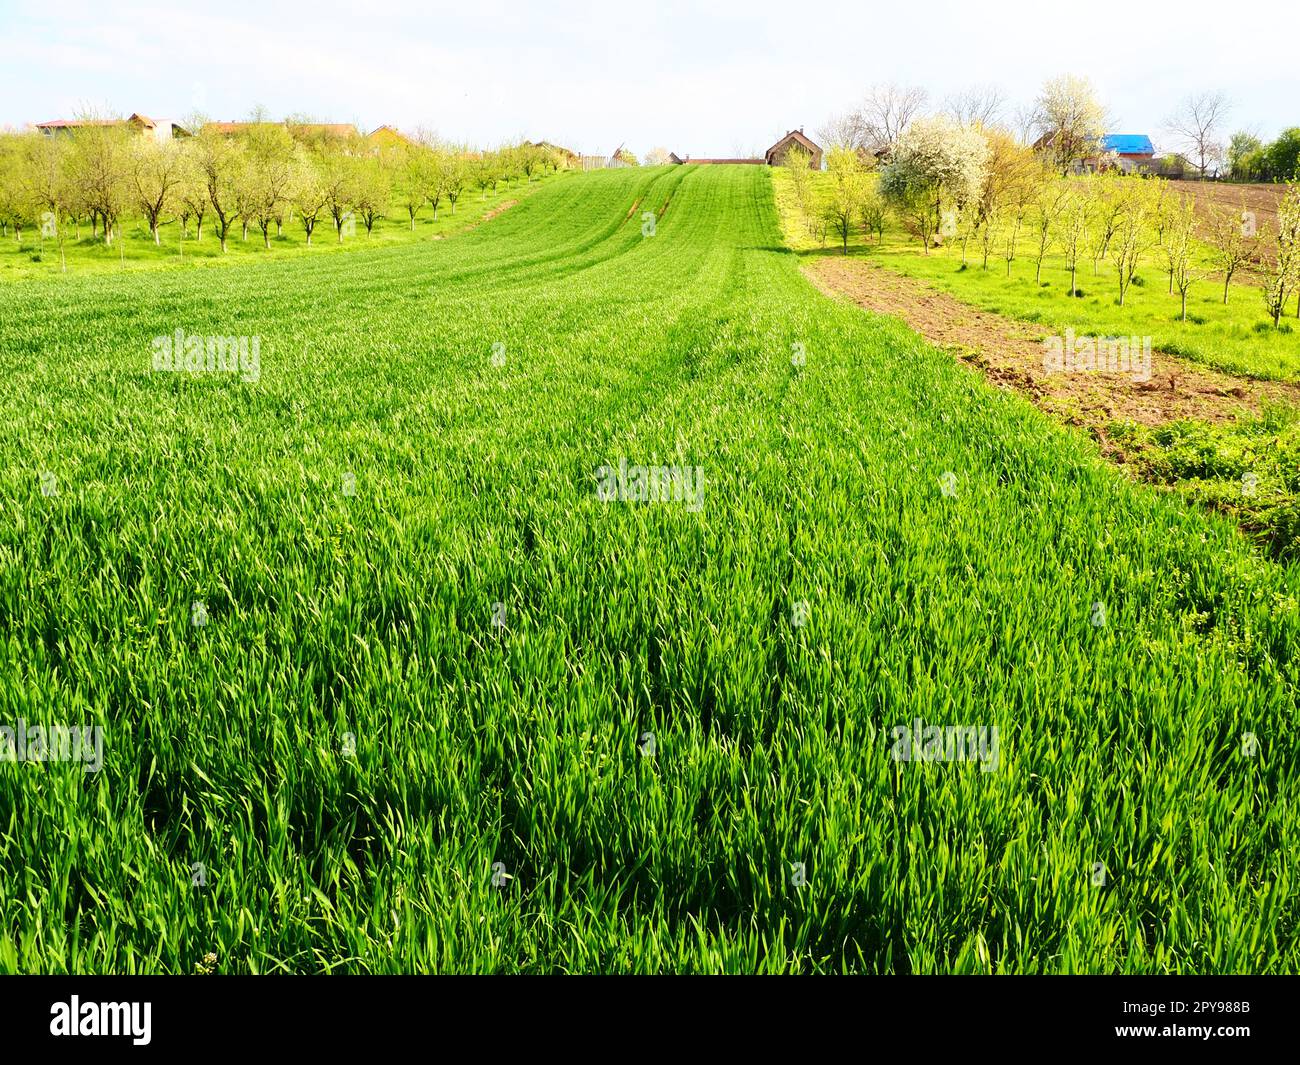 Wunderschöne grüne Weizenfelder auf dem Land. Grünes Weizenfeld. Grüne Weizensprossen auf dem Feld. Grünes Gras. Das Gras schwankt im Wind Stockfoto